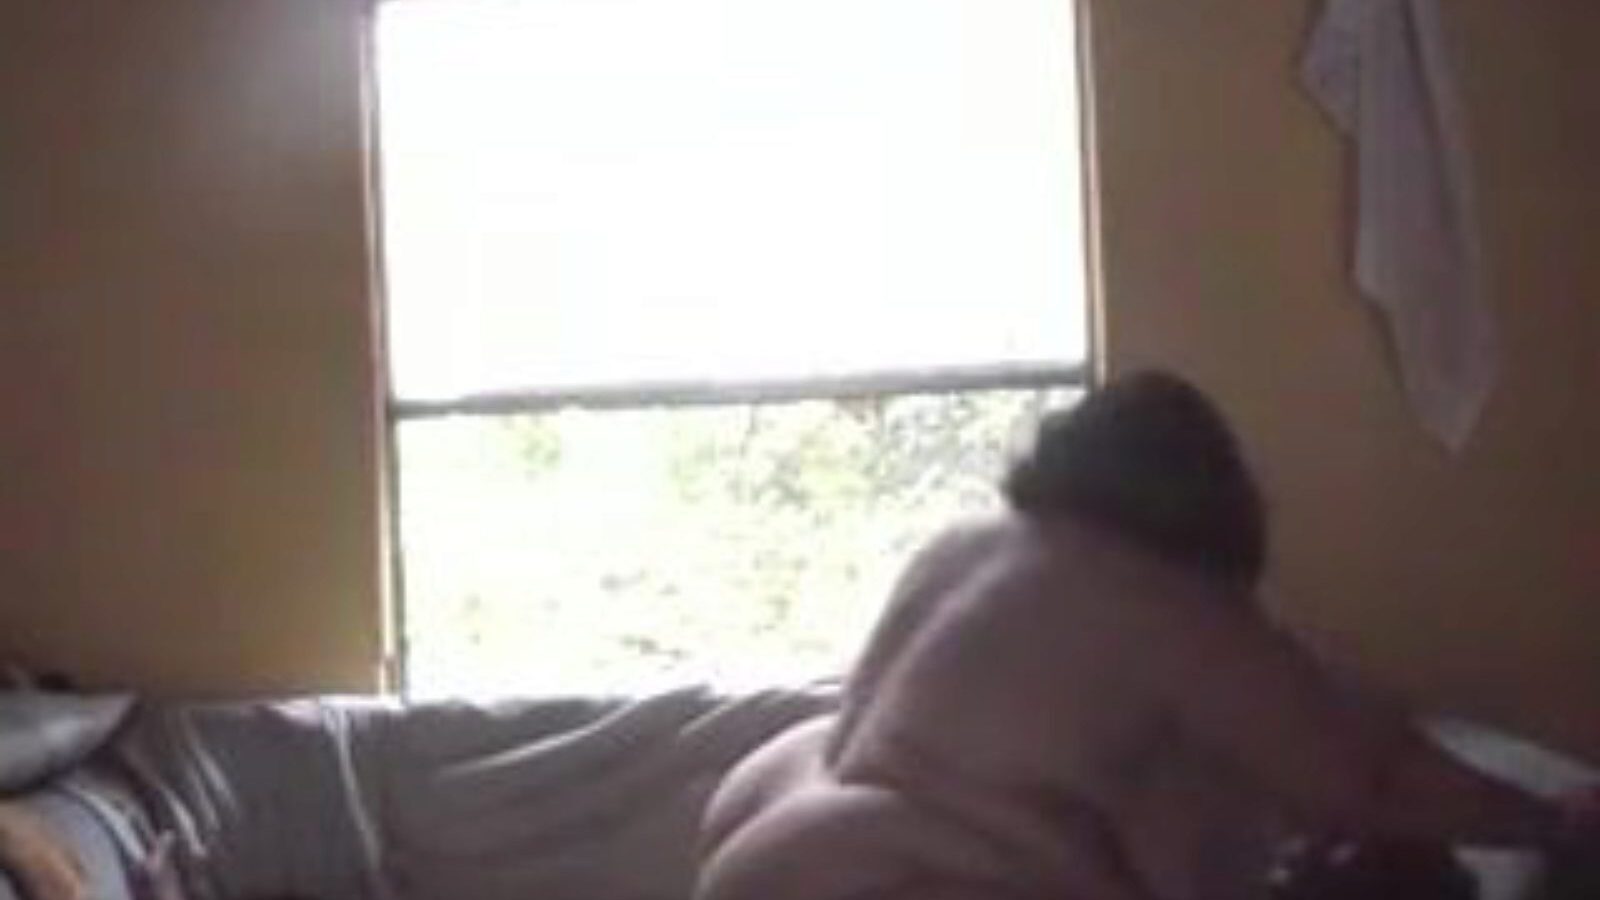 ssbbw bovenop zwarte man, ssbbw dvd porn fa: xhamster assistir ssbbw bovenop zwarte man clip no xhamster, a melhor página da web de tubo com toneladas de episódios de pornografia ssbbw dvd free-for-all dvd chubby man & guy